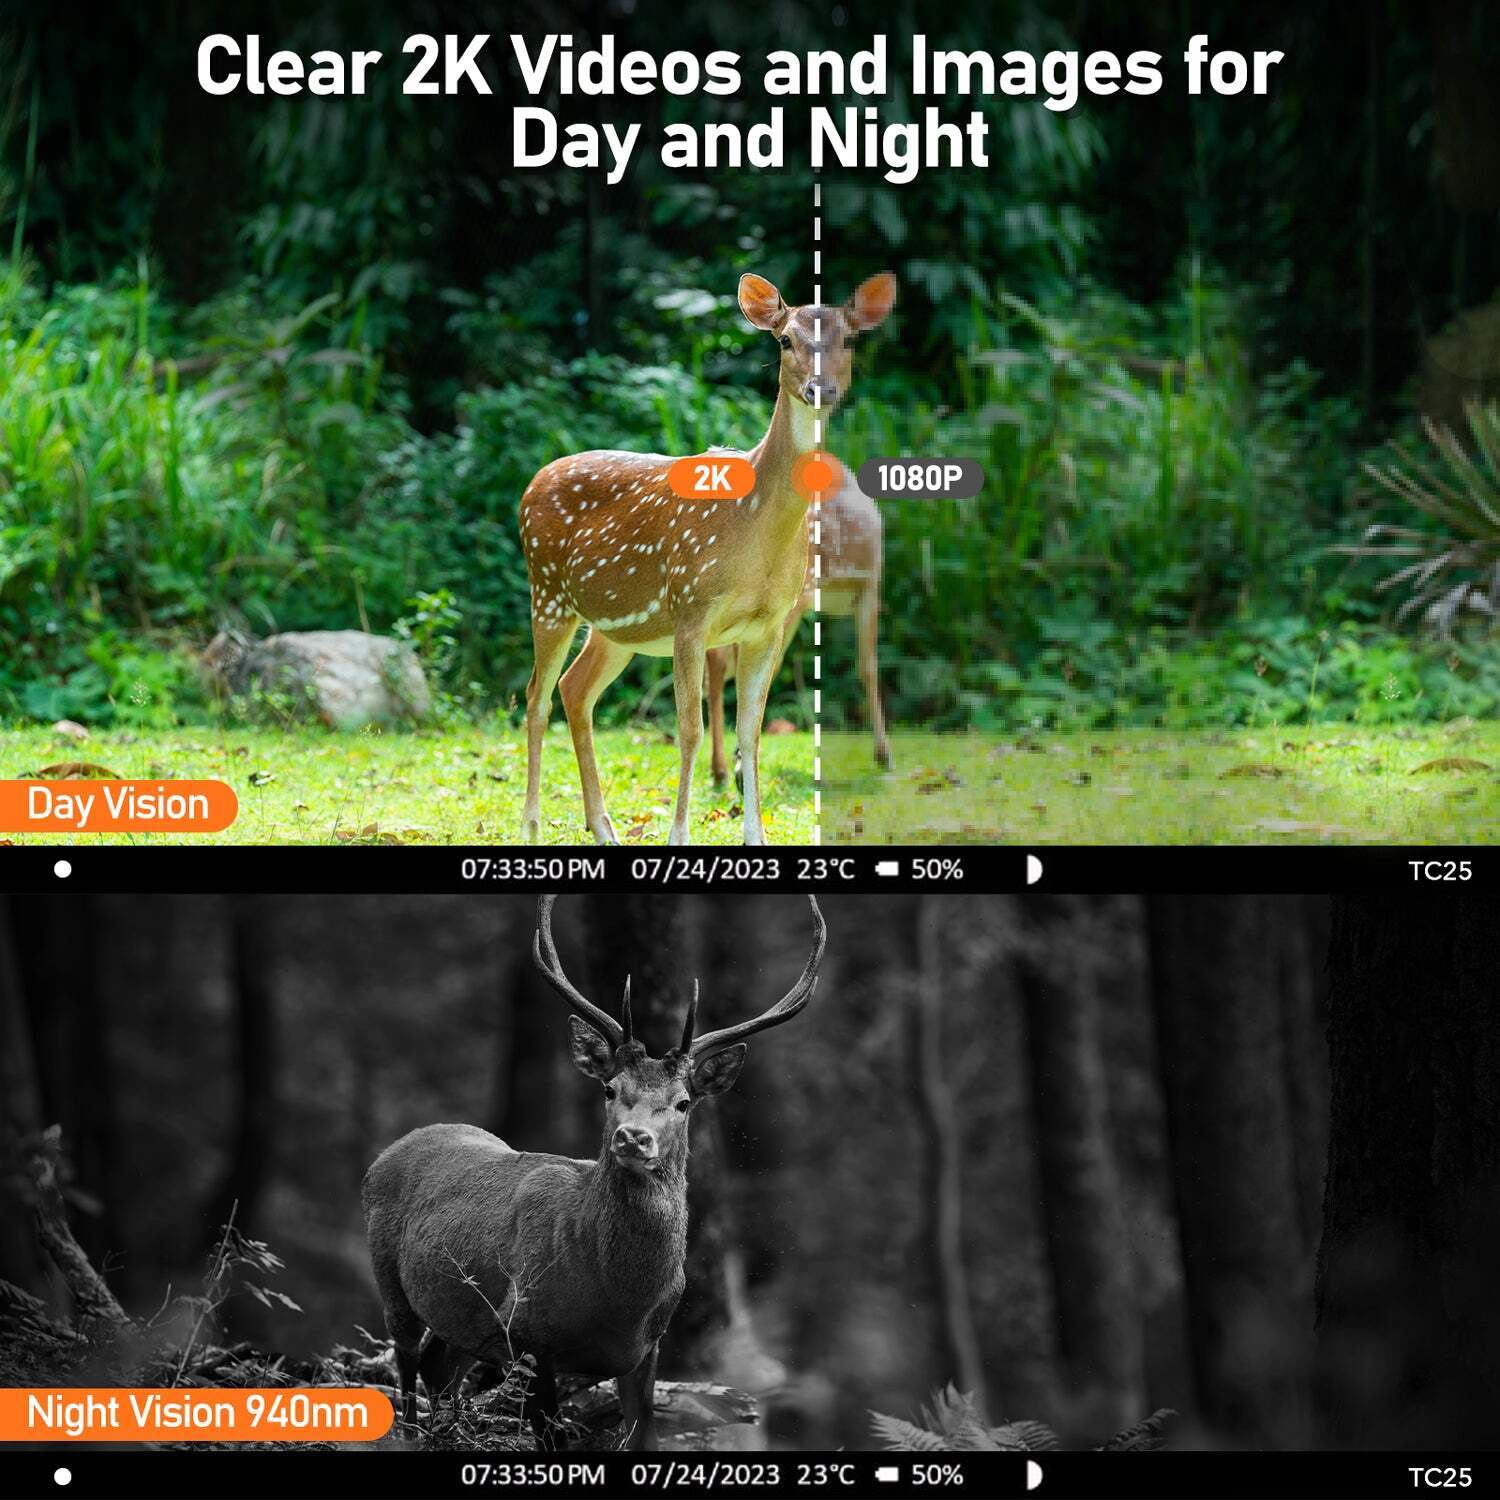 Hirschjagdkamera, Modell TC25, nimmt bei Tag und Nacht klare 2K-Videos und Bilder von einem Hirsch im Wald auf, mit Angaben zu Uhrzeit, Datum, Temperatur und Akkulaufzeit.